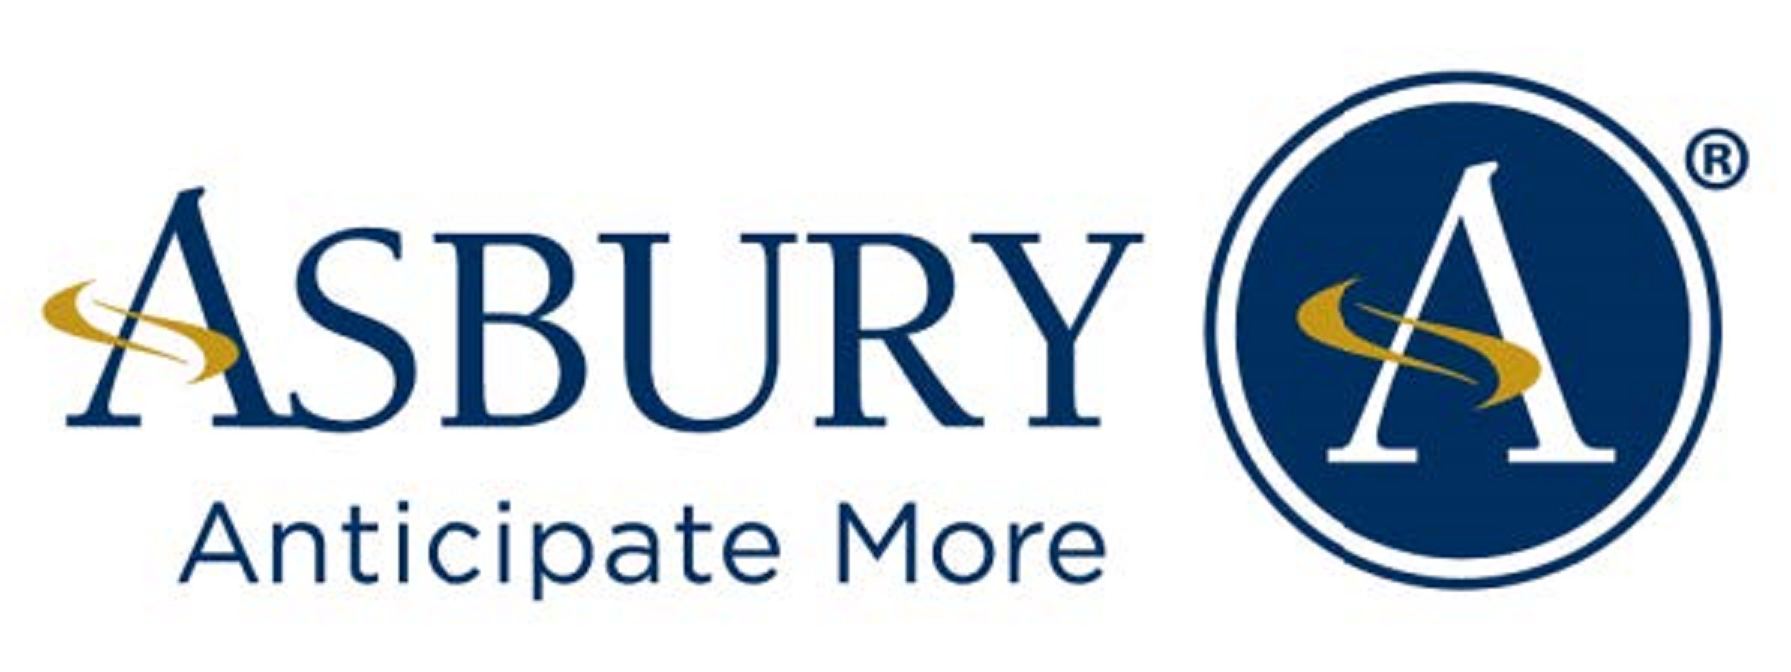 300x300_Asbury_Logo.png